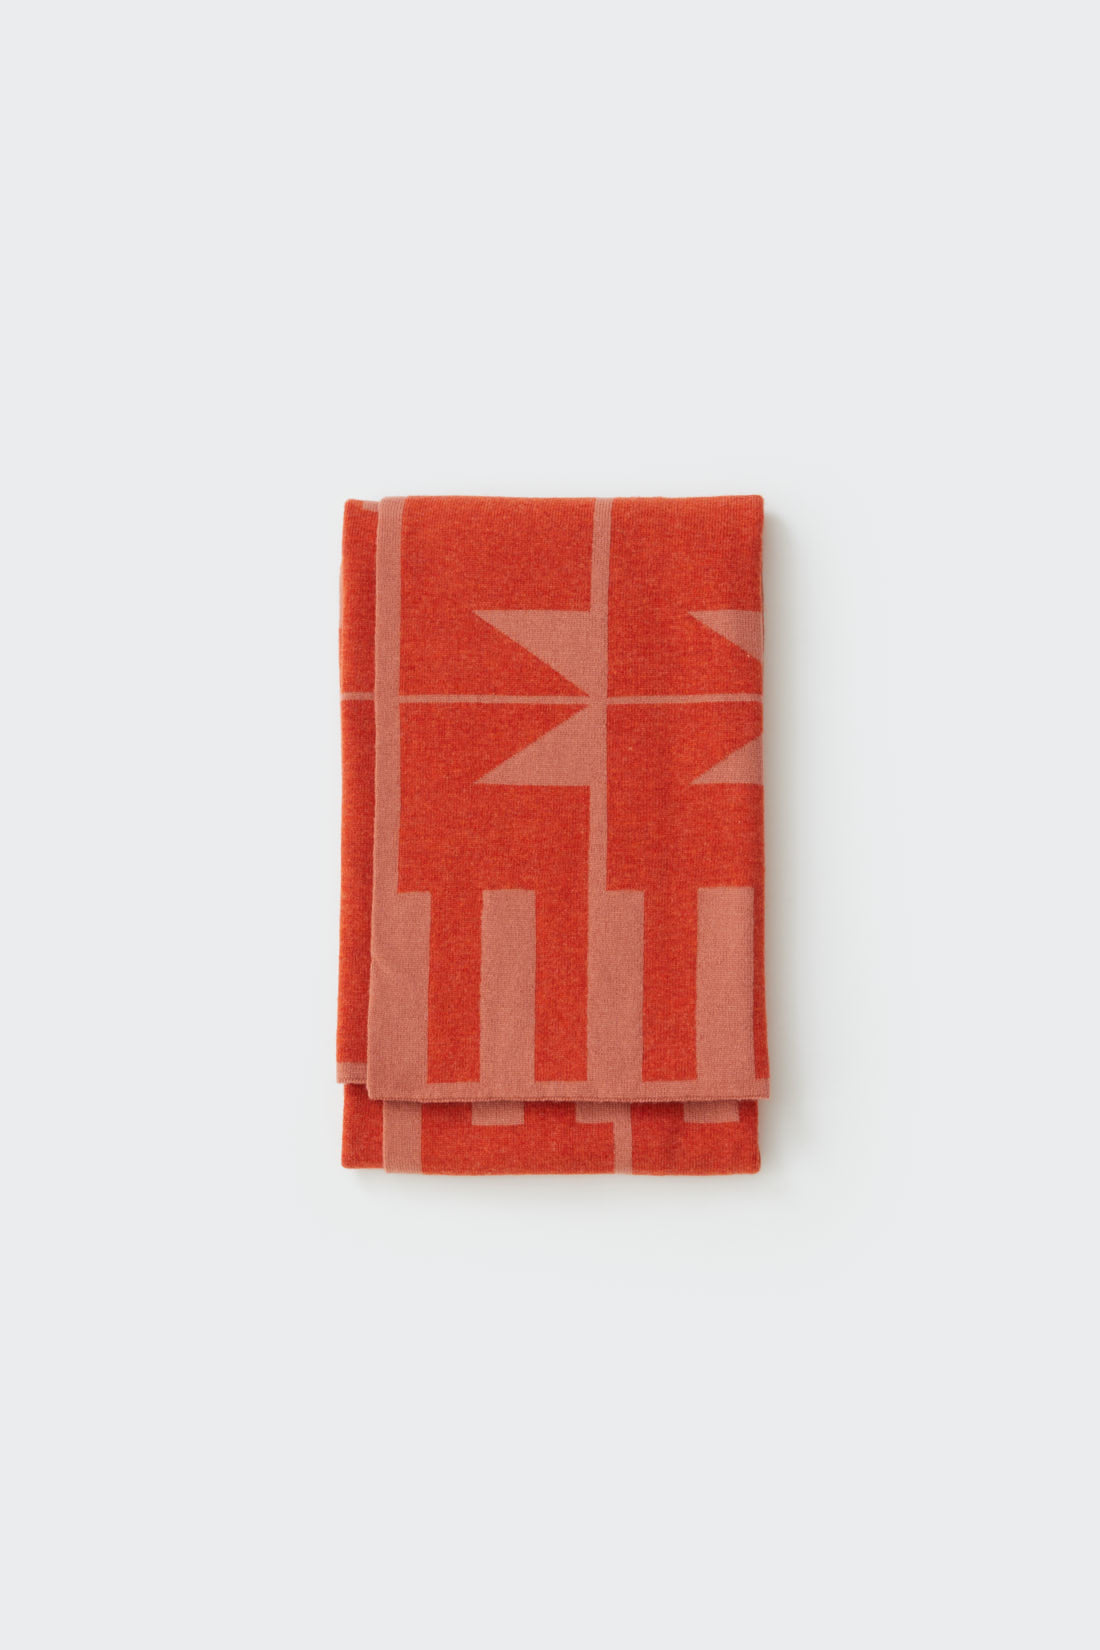 Mini Blanket "Keel" - Rosehip + Rust